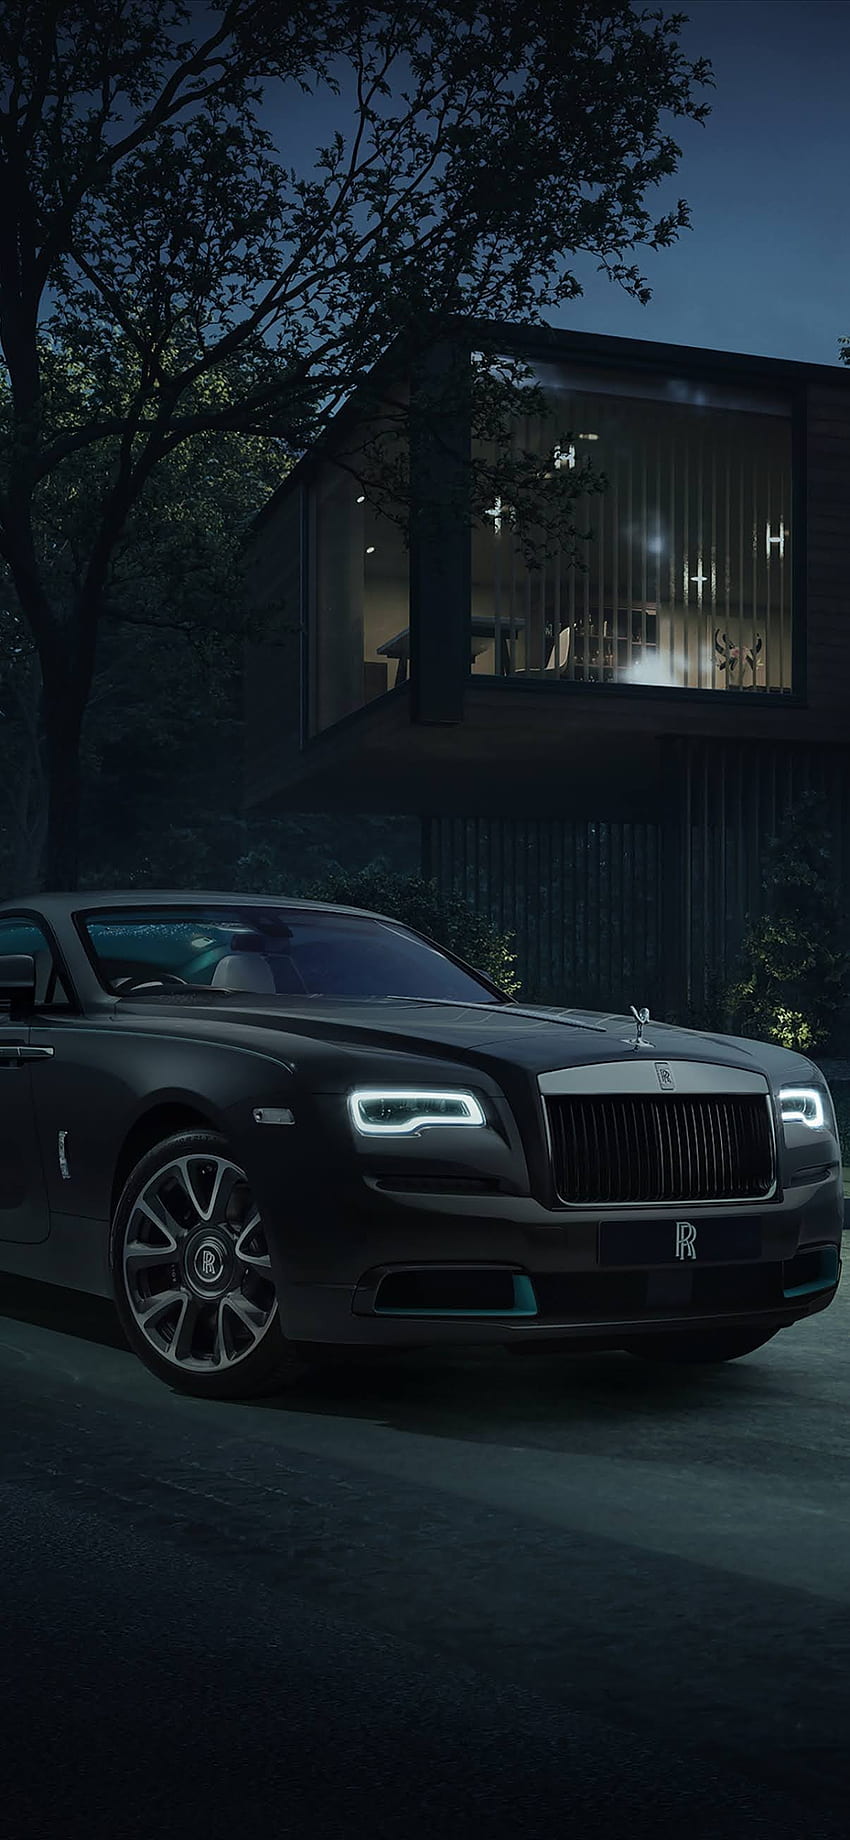 Rolls-Royce luôn tỏa sáng trong làng xe hơi với thiết kế đẳng cấp và sang trọng. Hình ảnh về Rolls-Royce sẽ giúp bạn tận hưởng trọn vẹn sự cao quý của những chiếc xe này. 